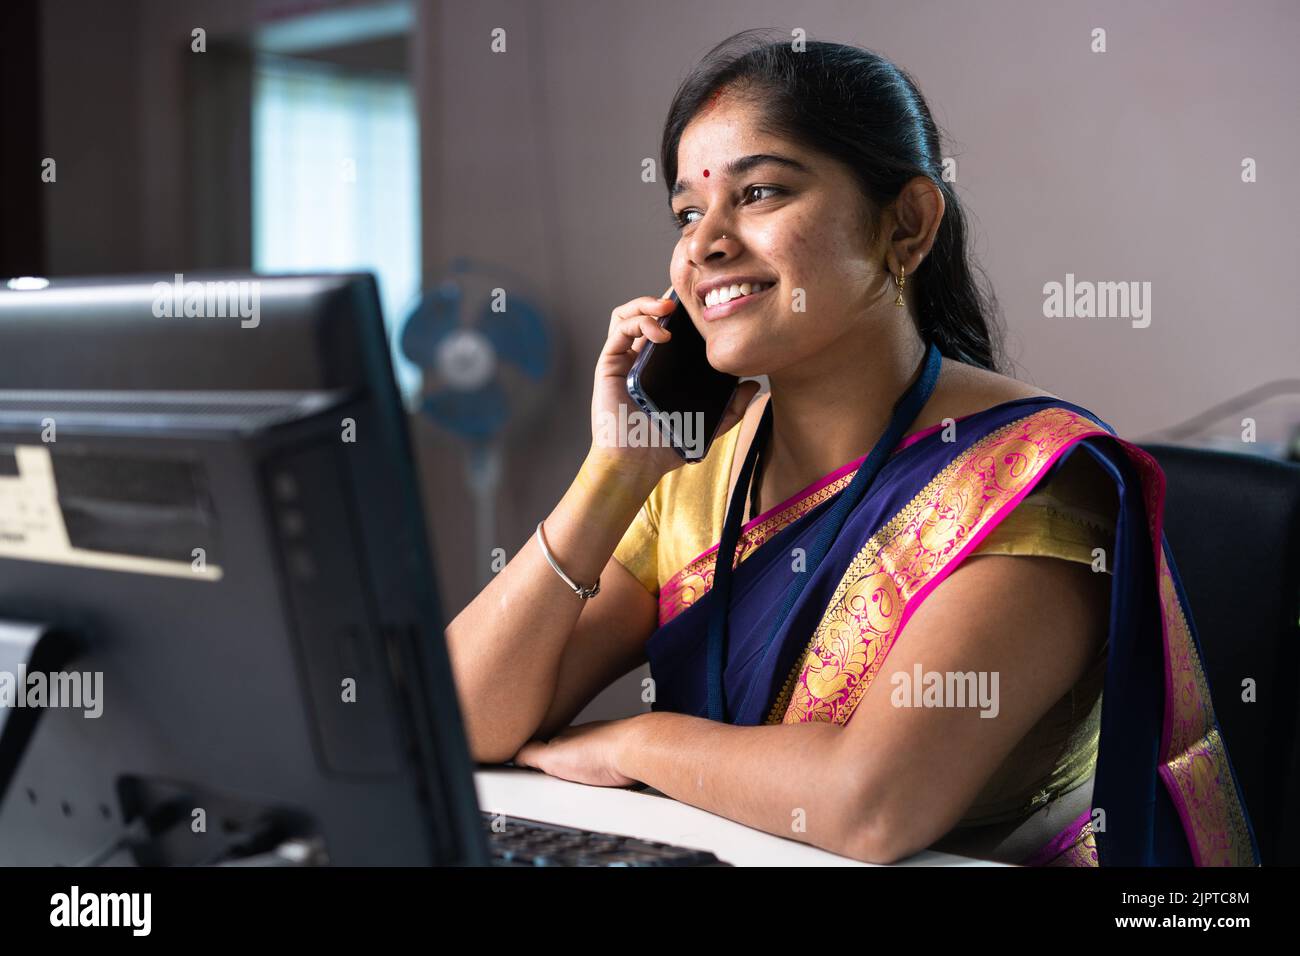 Ein glücklicher, lächelnder Banker, der mit dem Kunden auf dem Mobiltelefon spricht, während er bei der Bank sitzt – Konzept der Kommunikation, des Finanzberaters und der Entspannung. Stockfoto